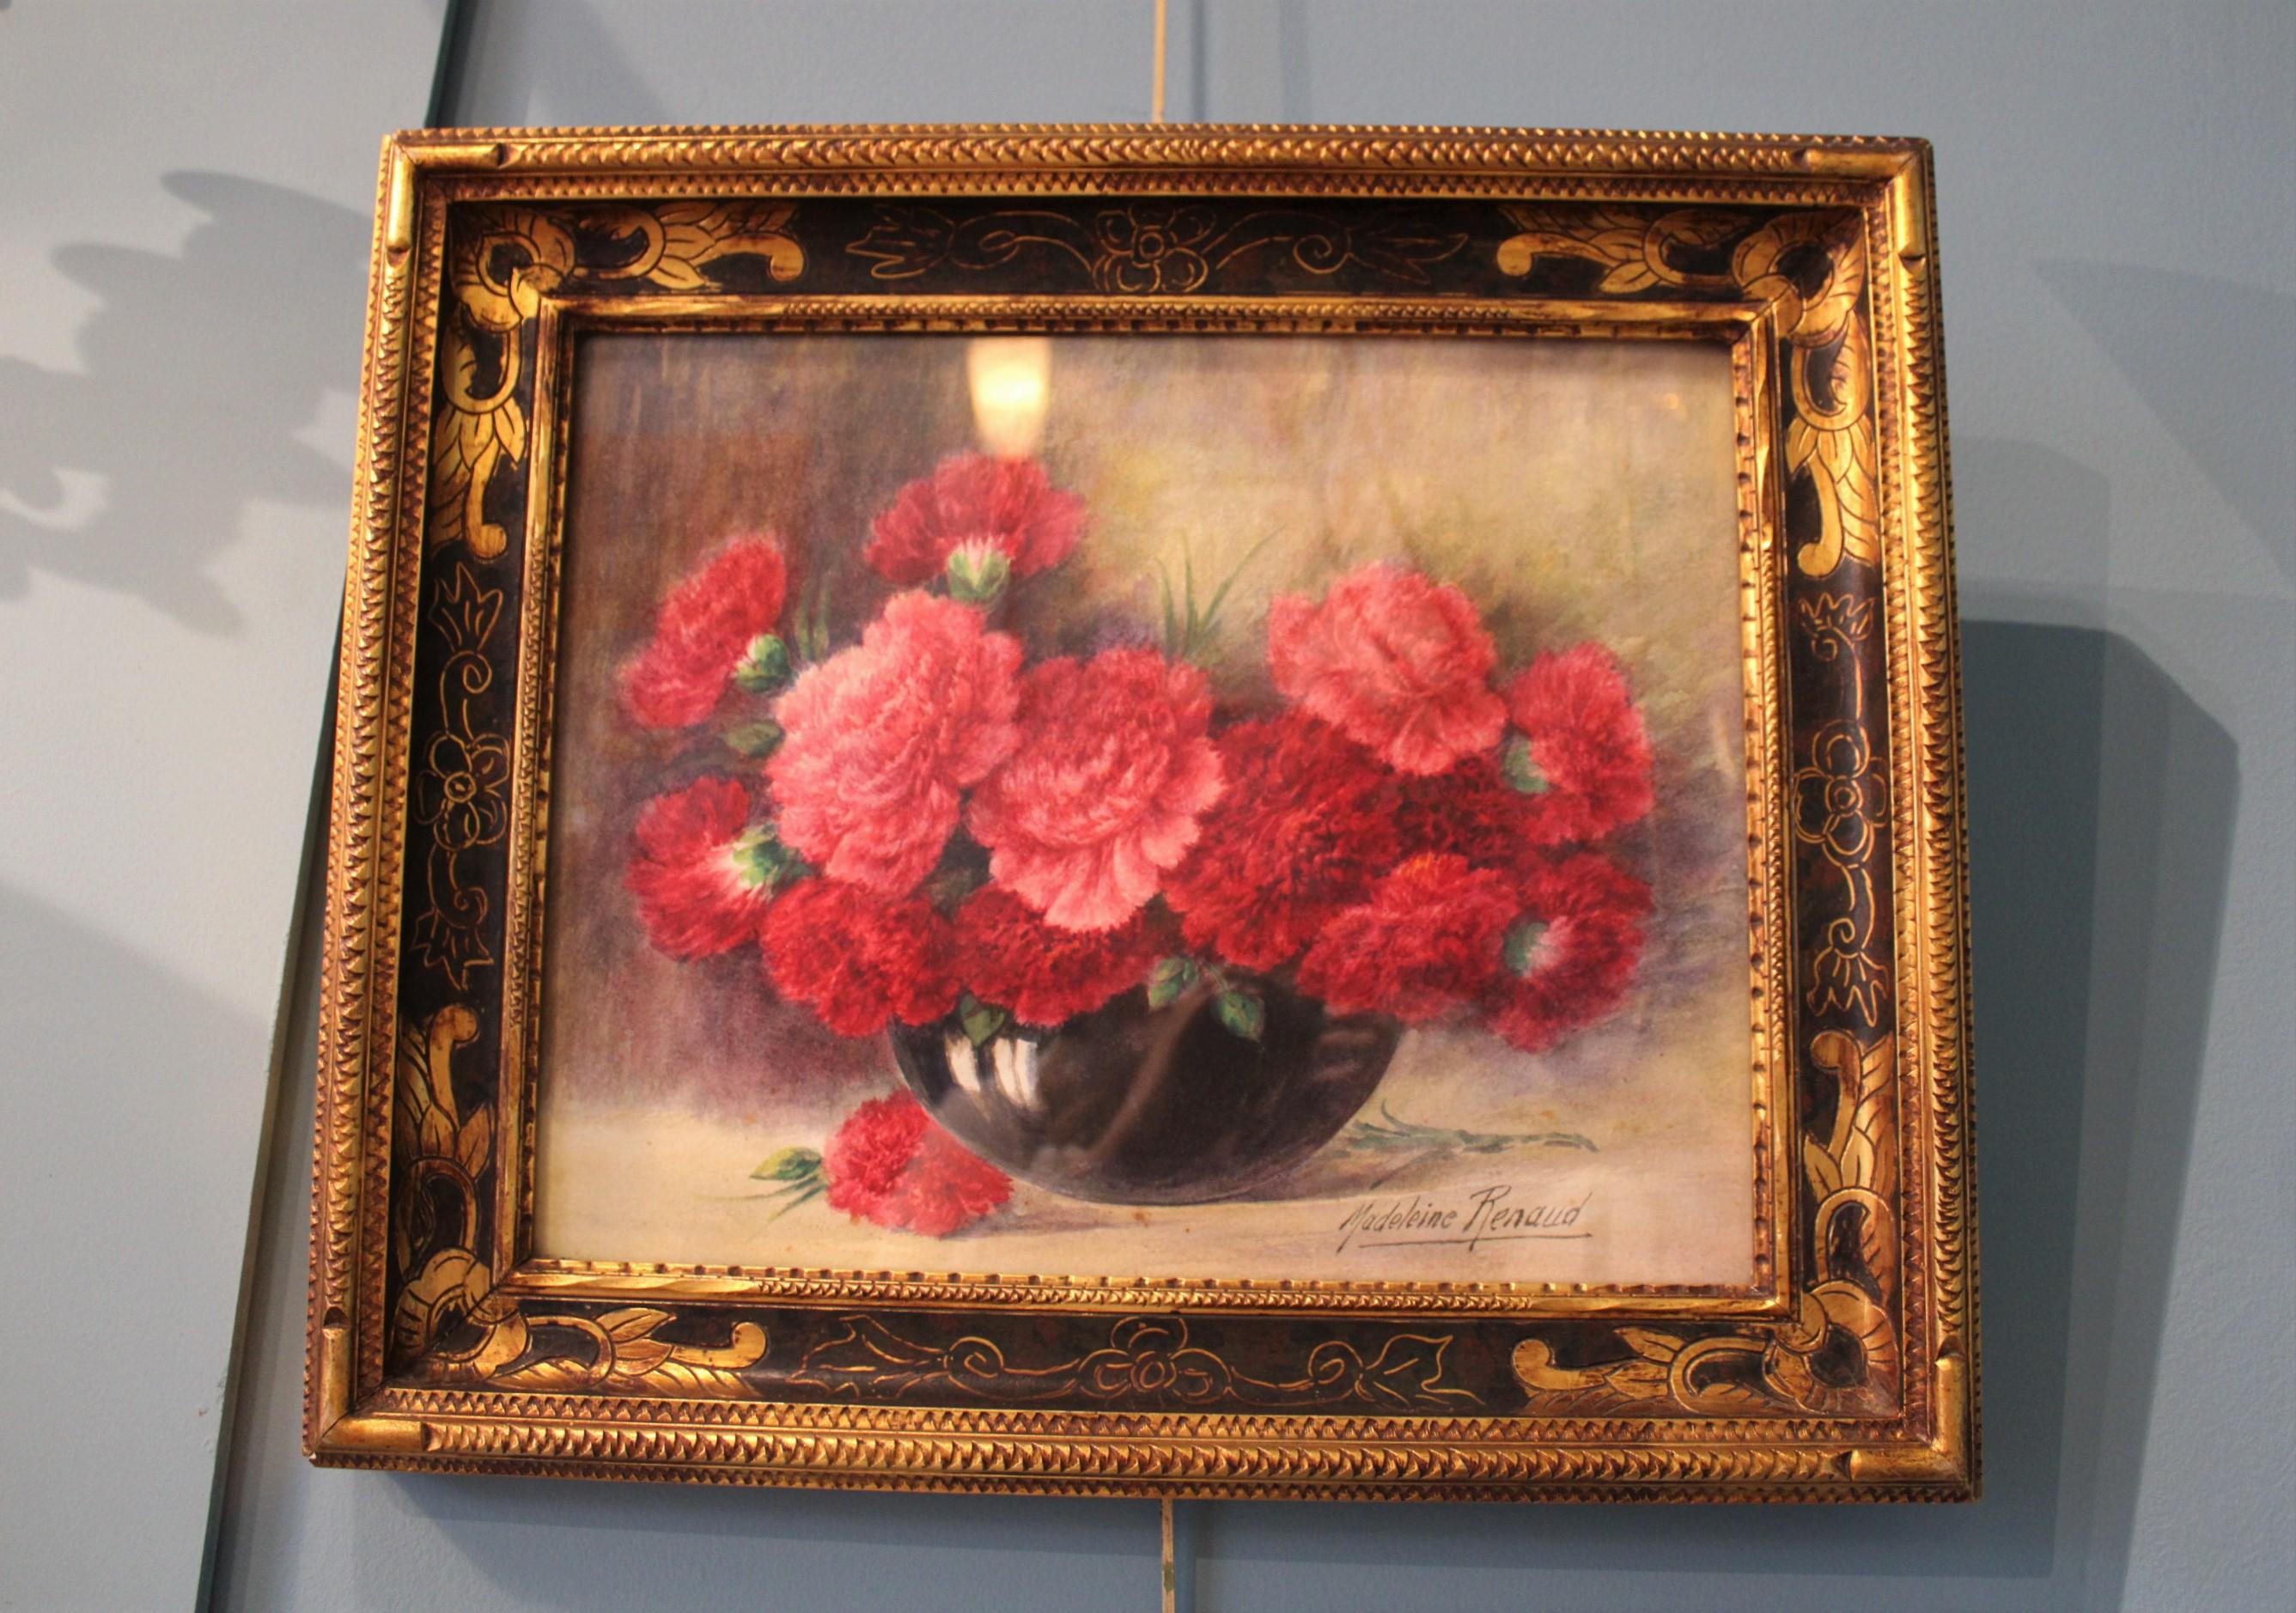 Madeleine Renaud (1900 - 1994)
Vase avec un bouquet de fleurs.
Aquarelle sur papier, encadrée sous verre.
France, 20ème siècle.

Dimensions avec cadre : 52 x 44 x 4,5 cm.
Dimensions sans cadre : 40 x 33 x 0,2 cm.